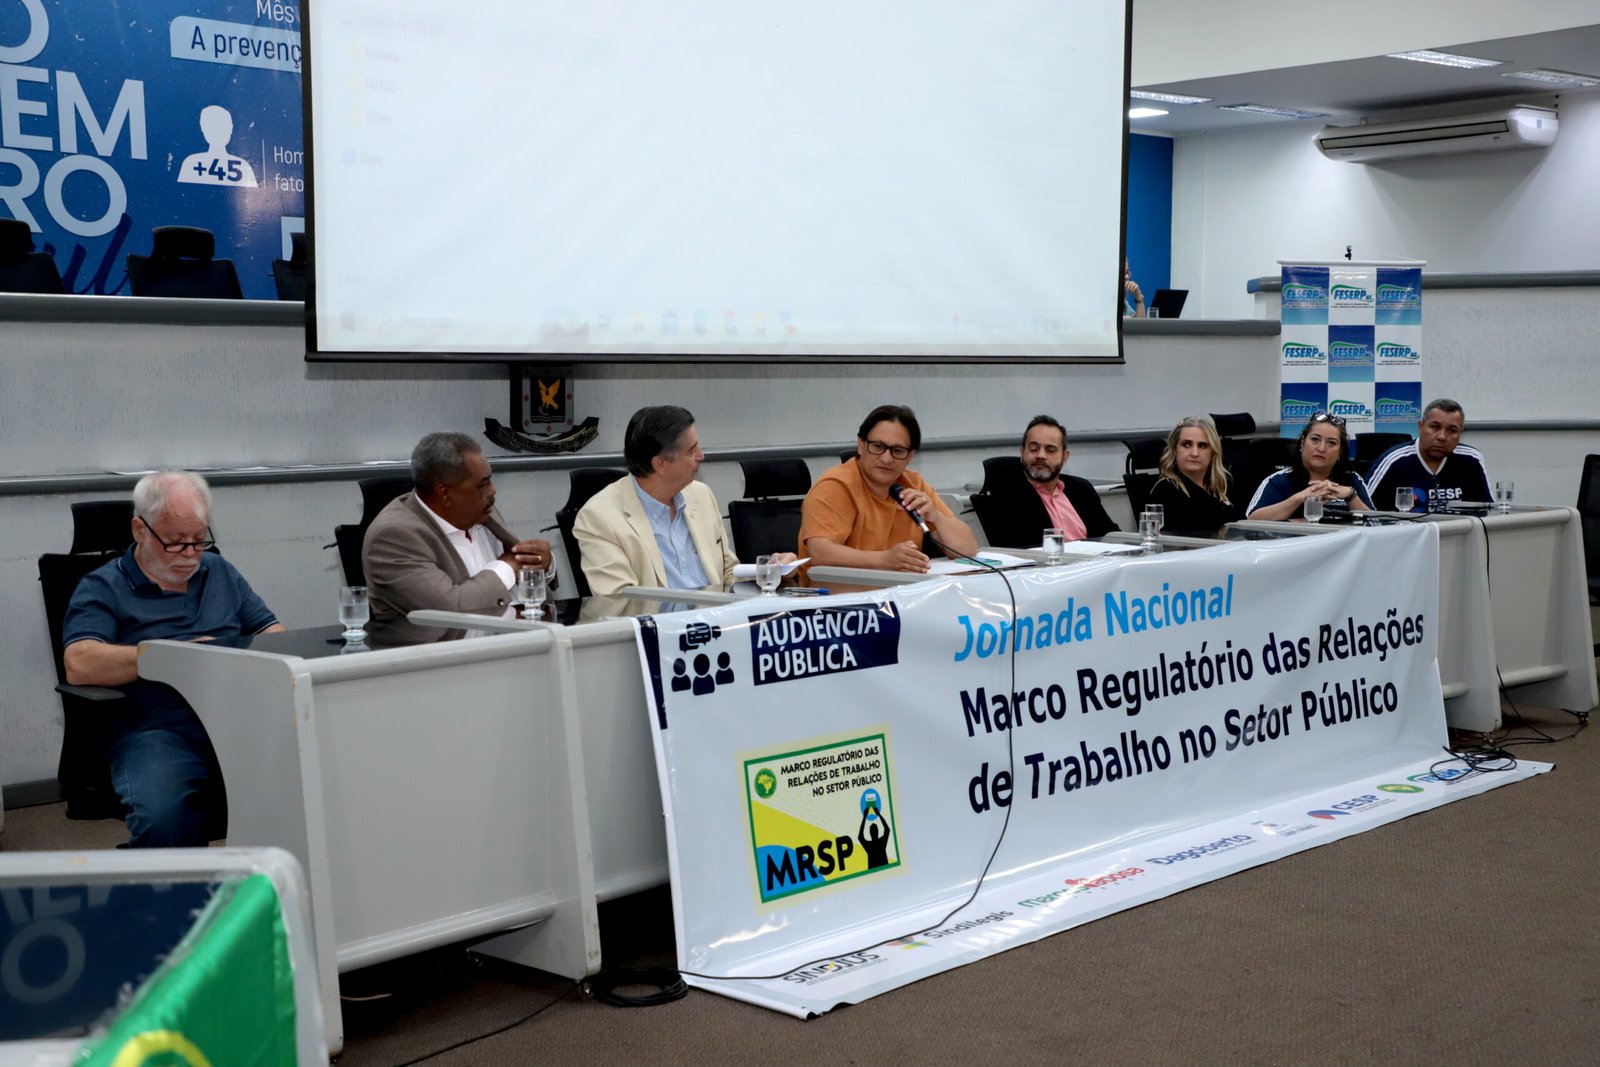 Câmara sedia debate sobre o Marco Regulatório das Relações de Trabalho no Setor Público